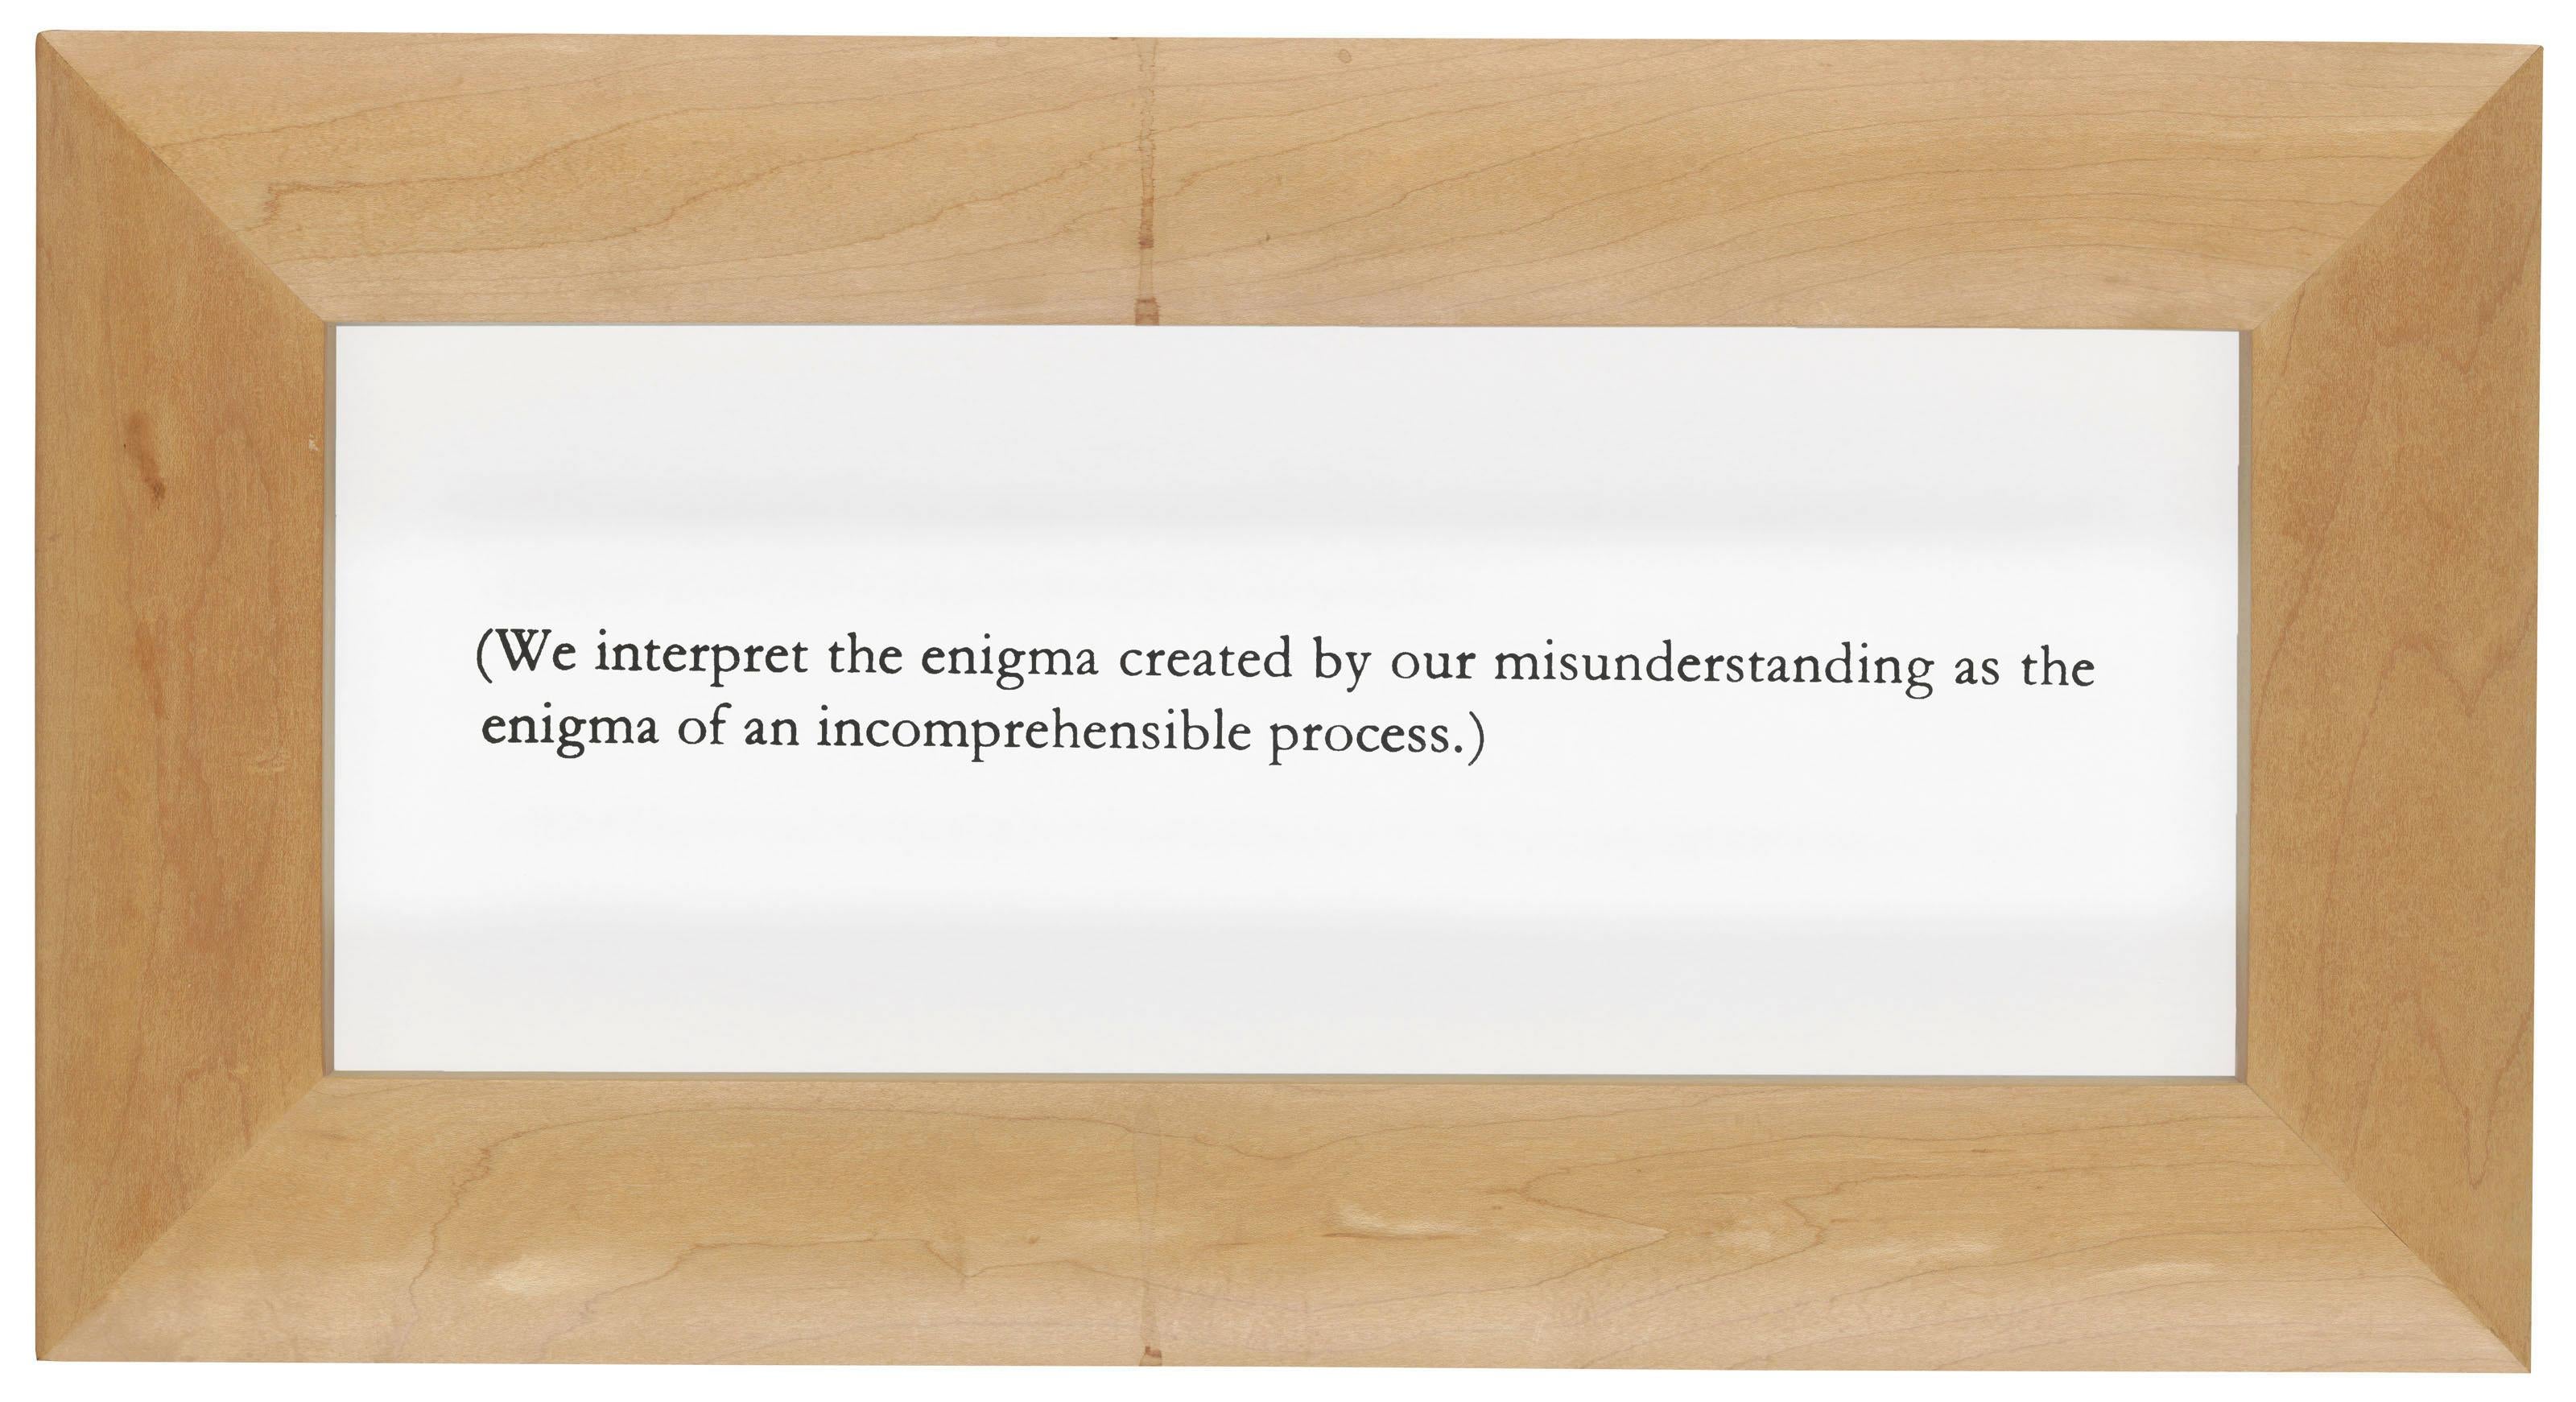 [Wittgenstein ohne Titel], 1991 
Joseph Kosuth

Siebdruck auf Glas in dem vom Künstler vorgesehenen Rahmen
Signiert und nummeriert in einer Auflage von 75 Stück auf einem rückseitig angebrachten Papieretikett
Gesamtgröße: 29,2 × 54,6 × 4,1 cm (11,5